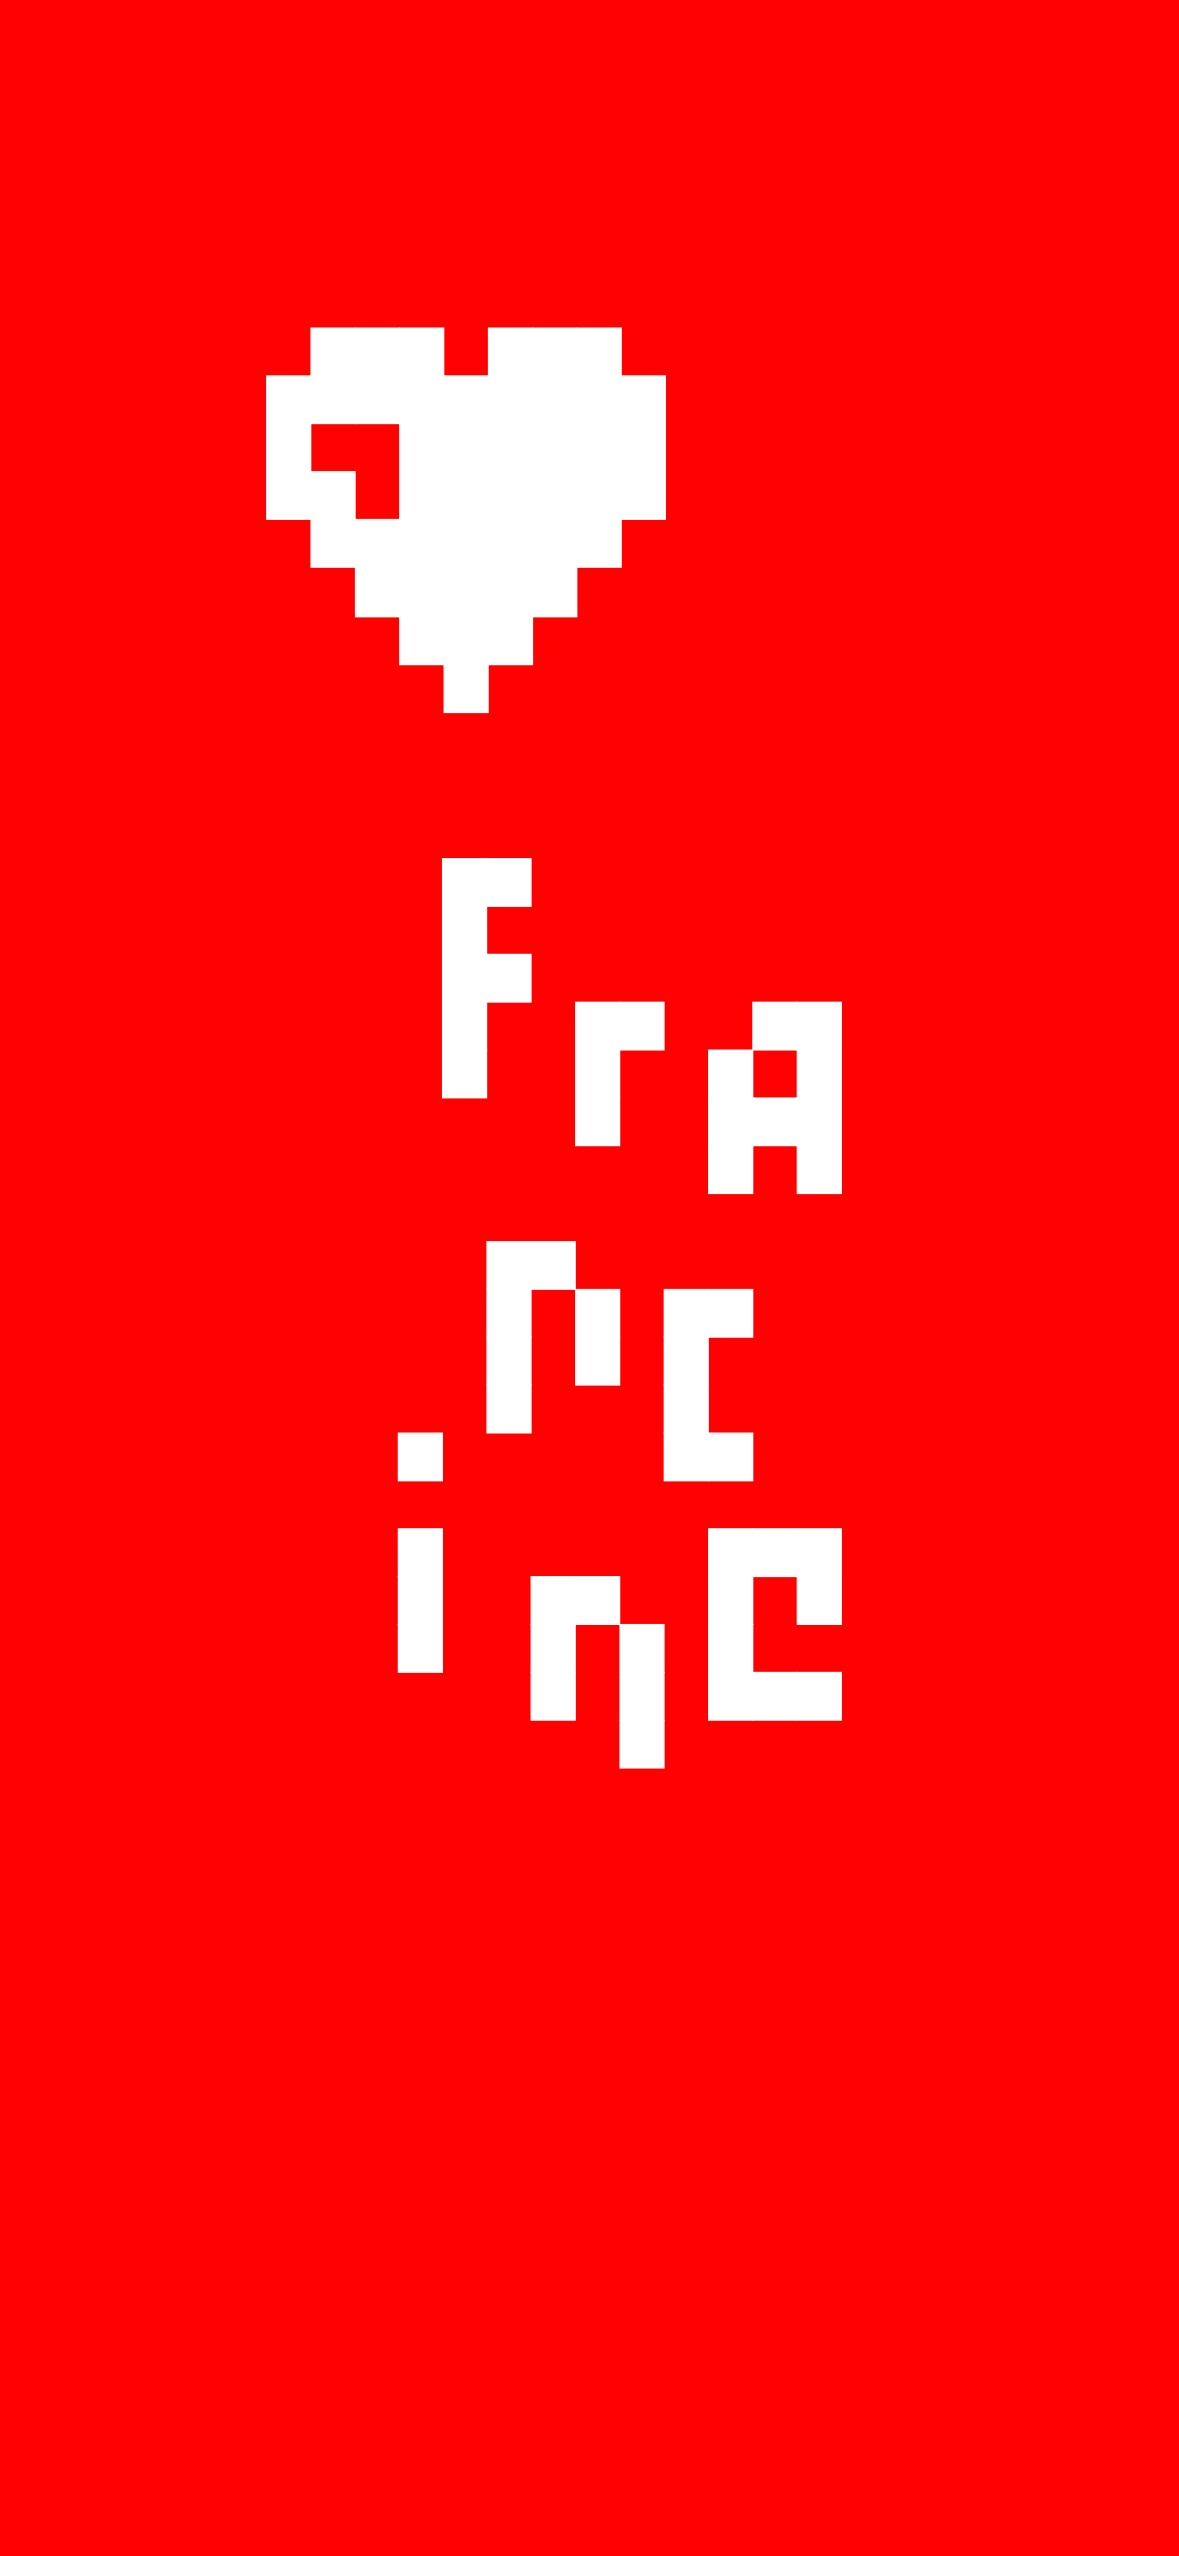 cœur en pixel au dessus du texte Francine en pixel sur fond rouge